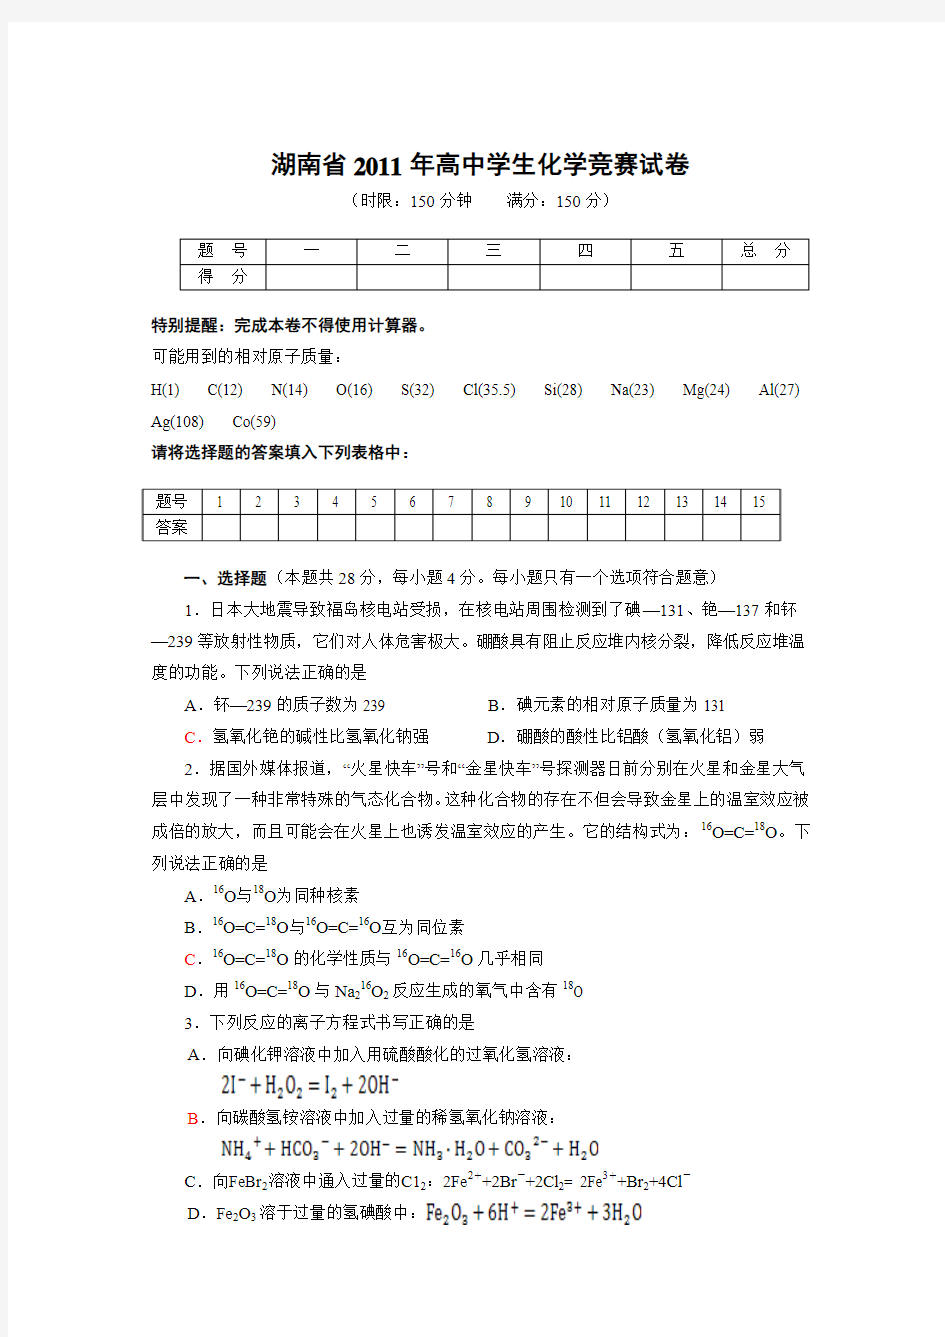 湖南省2011年高中学生化学竞赛试卷(正稿)